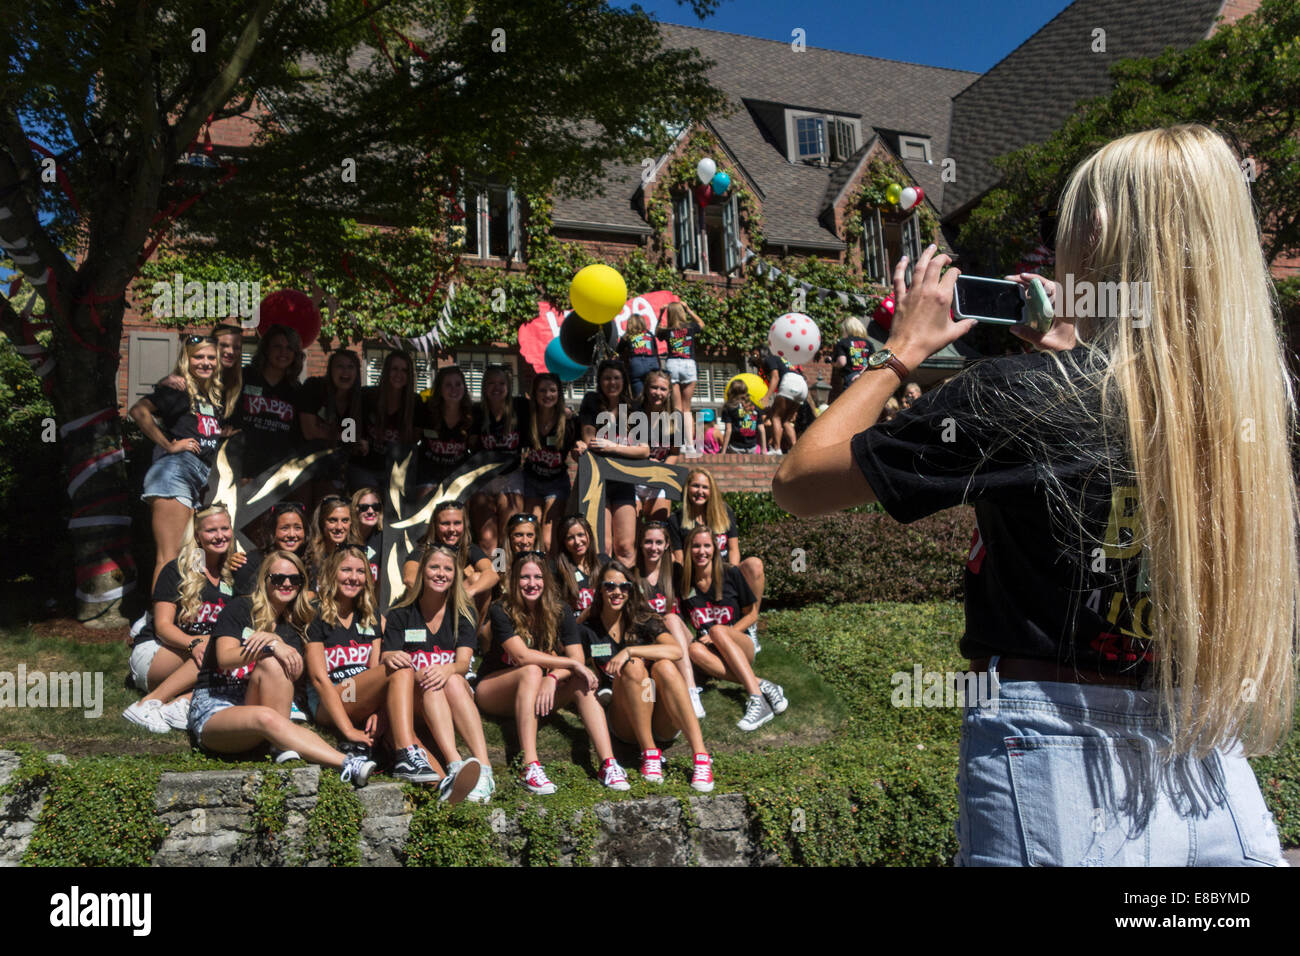 Kappa Kappa sorority Gamma parte per offerta settimana, Università di Washington, nello Stato di Washington, USA Foto Stock